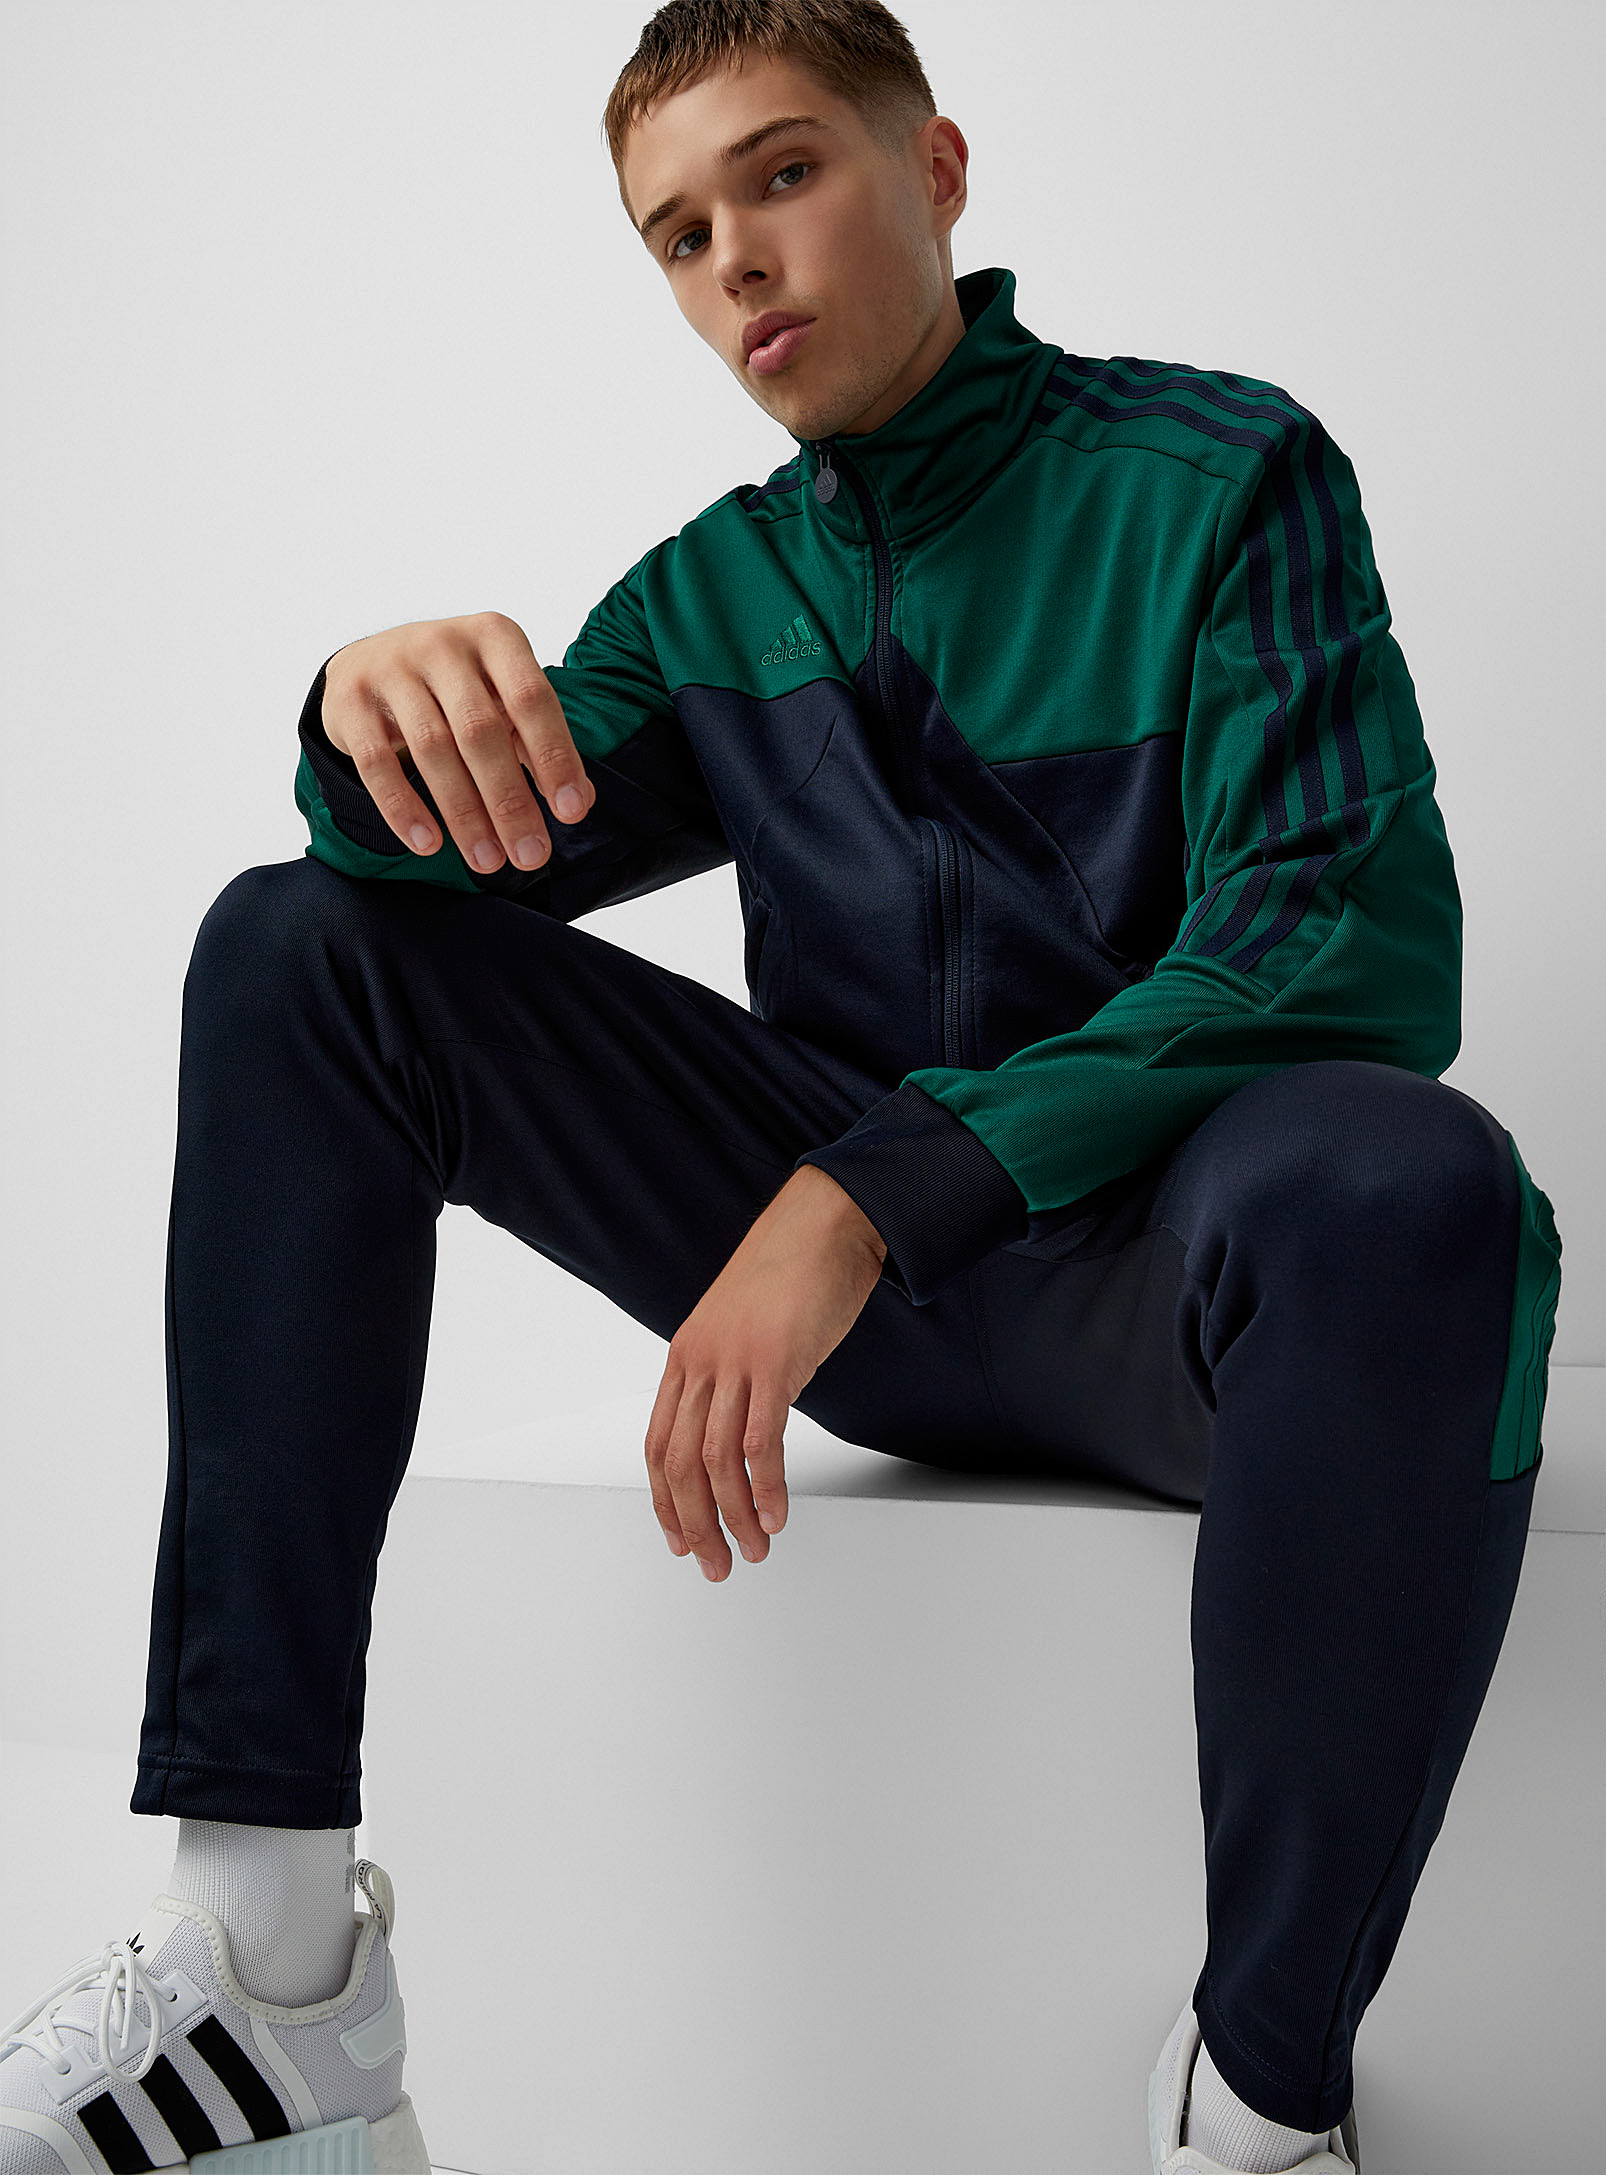 Adidas - La veste de survêtement vert impérial Tiro